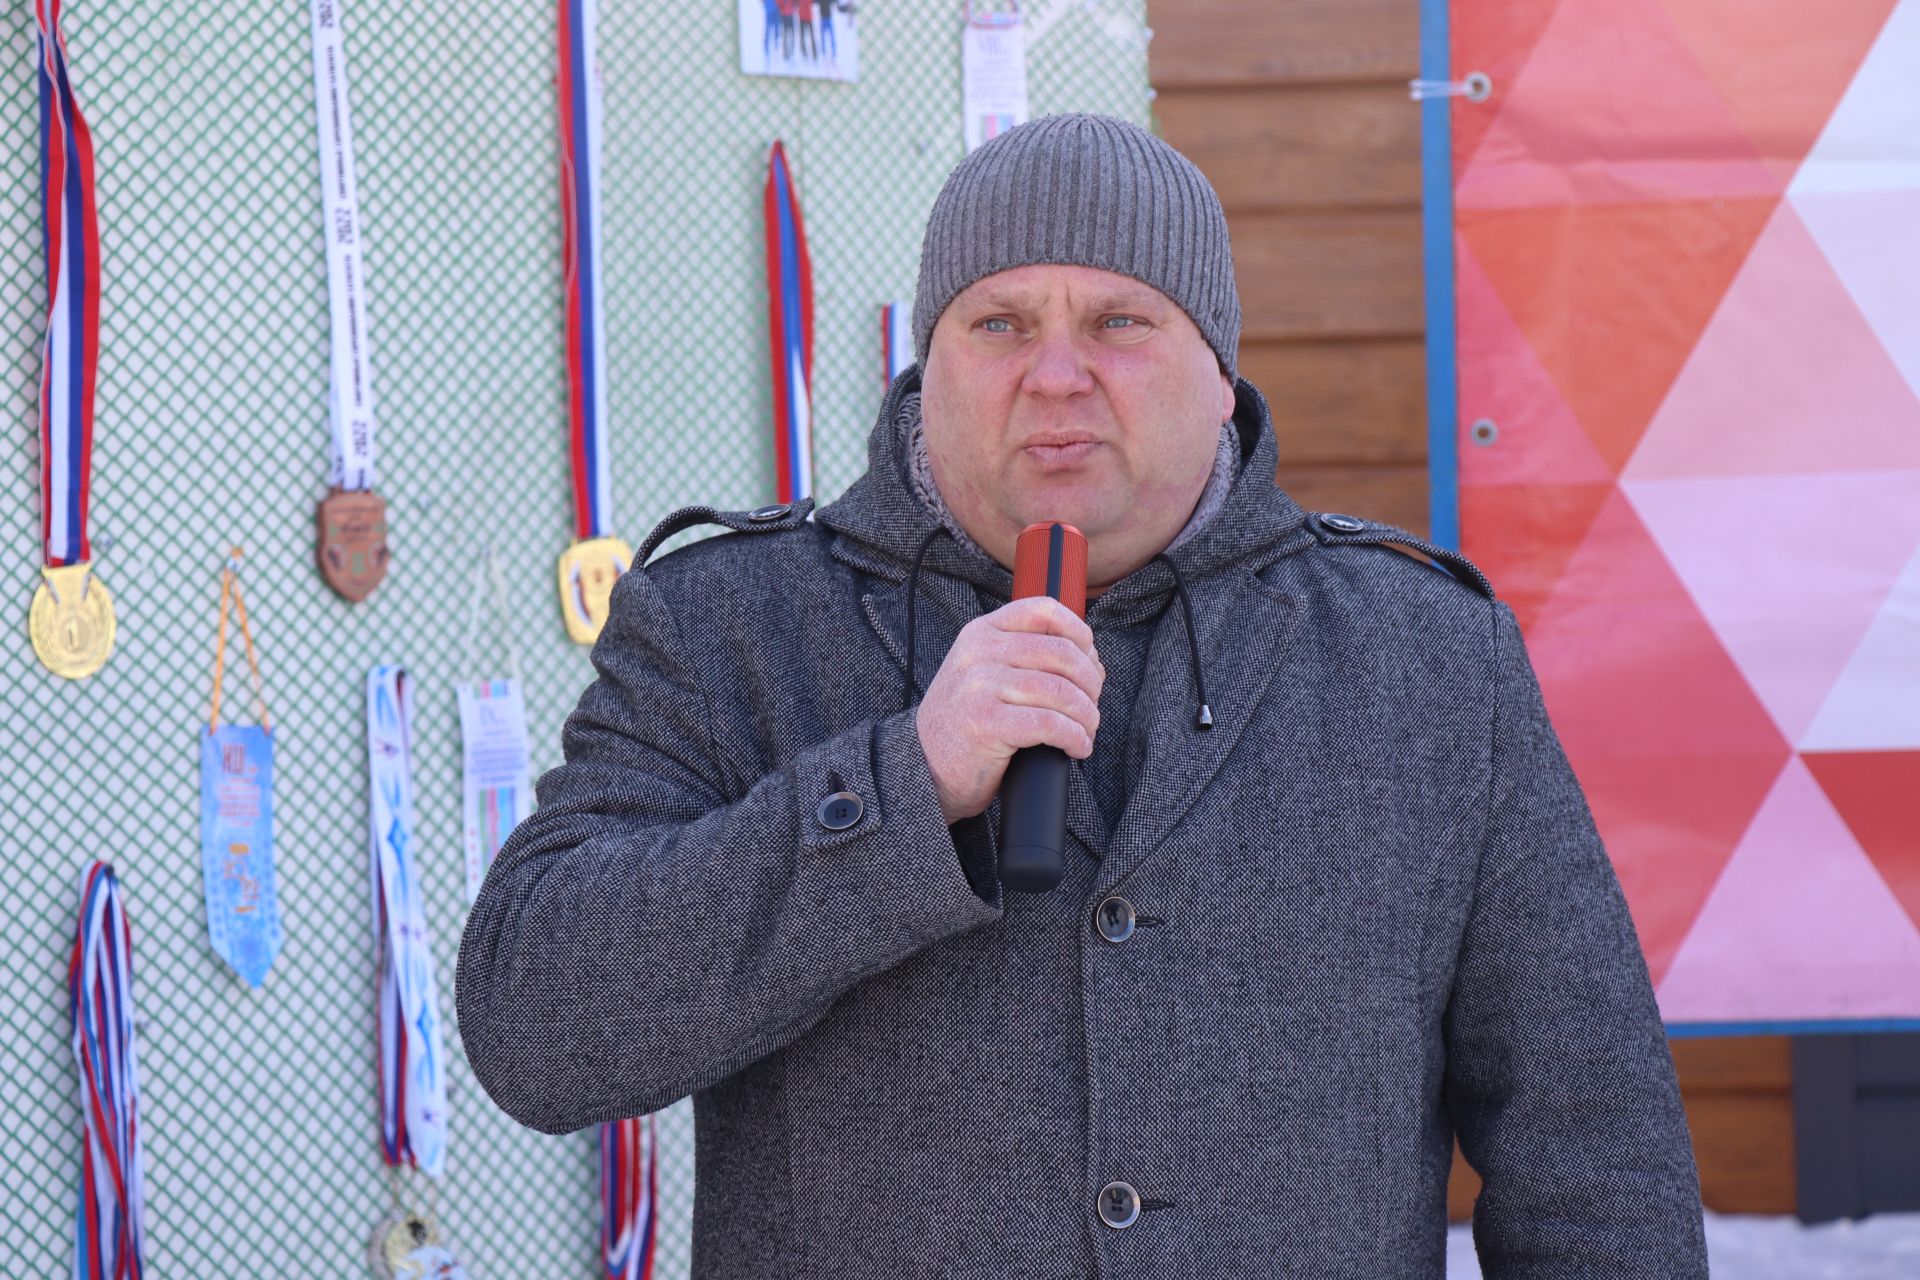 Нурлатские нефтяники встали на лыжи в память Владимира Шугаева